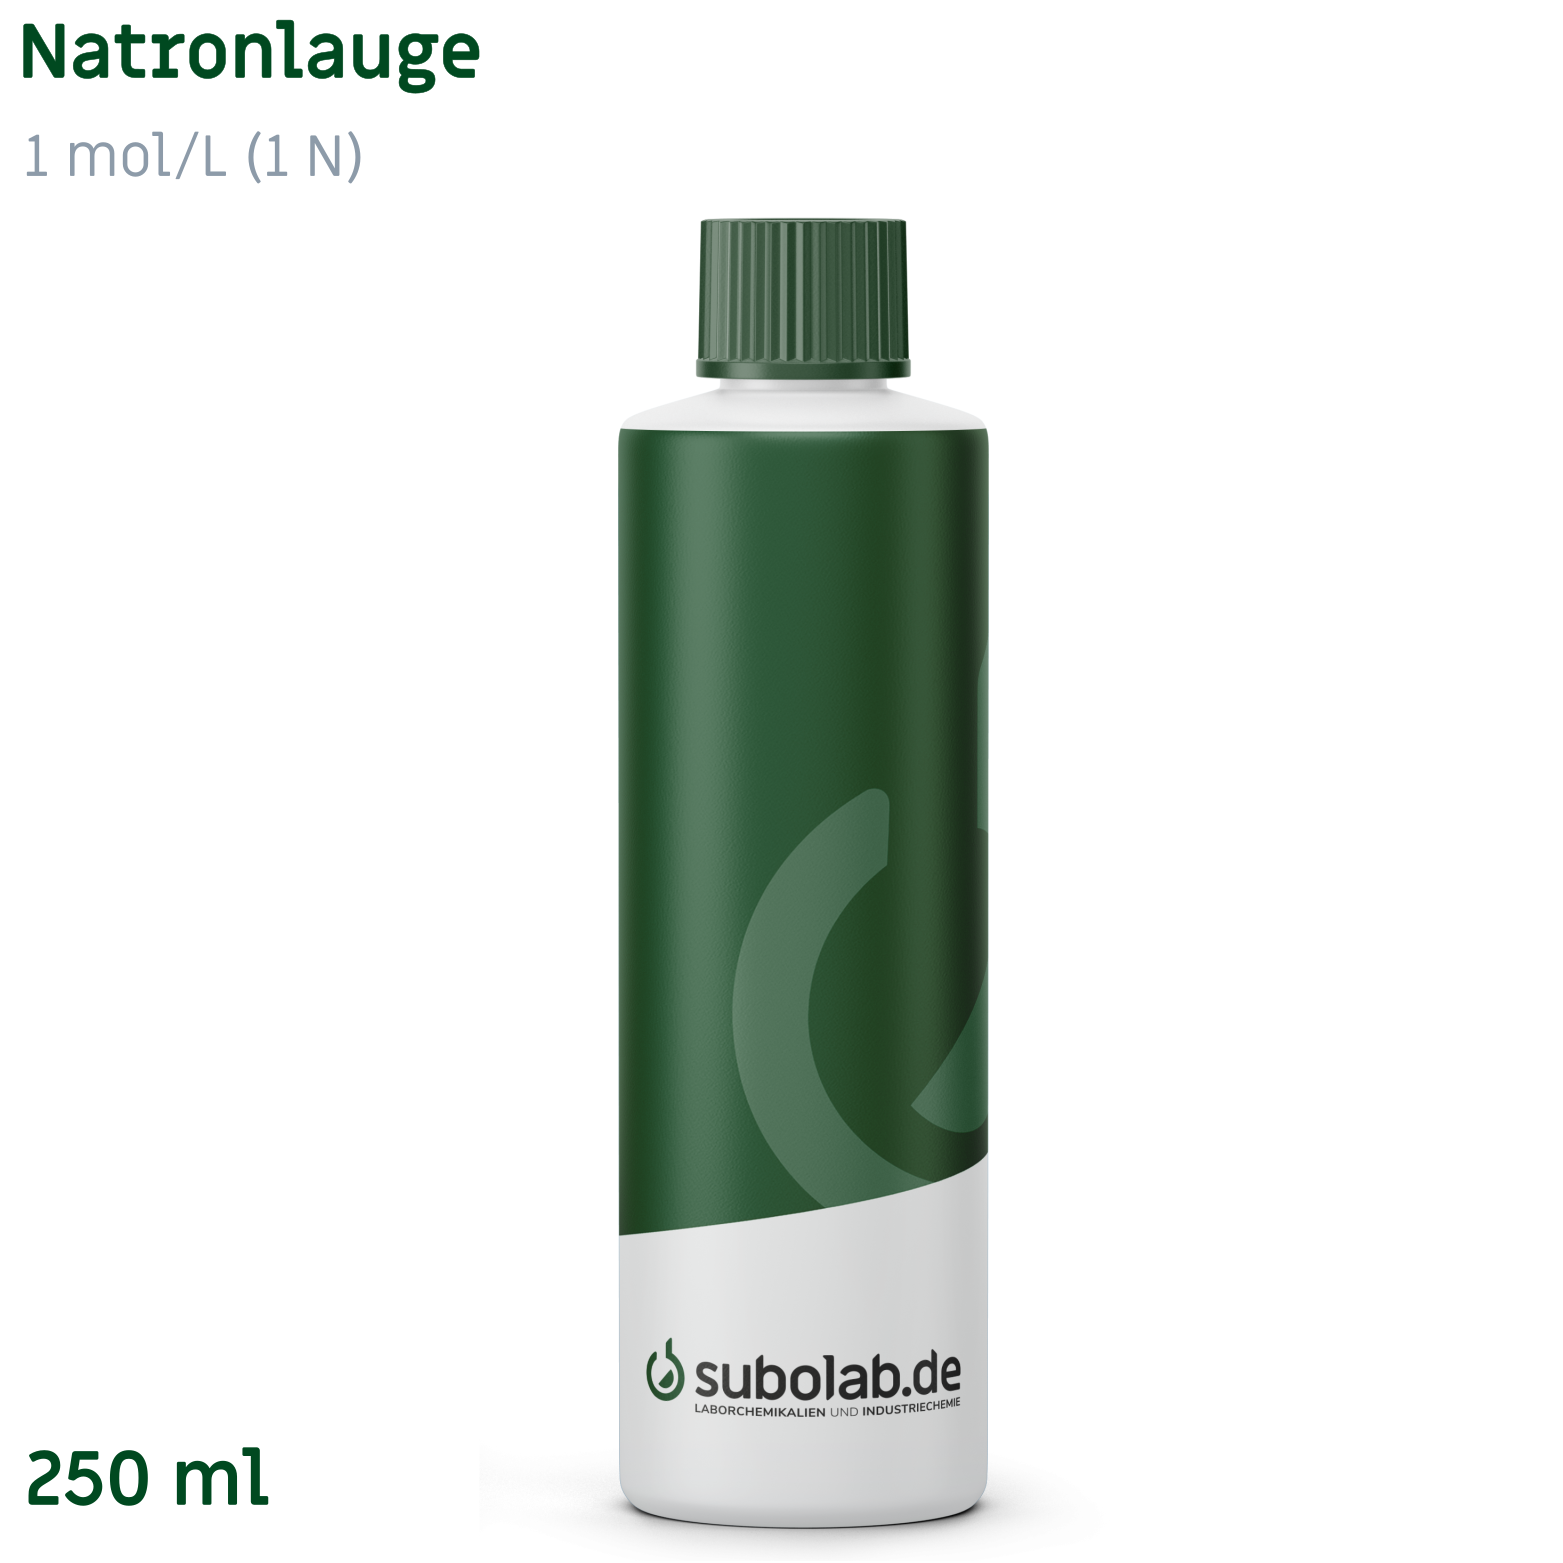 Bild von Natronlauge 1 mol/L (1 N) (250 ml)